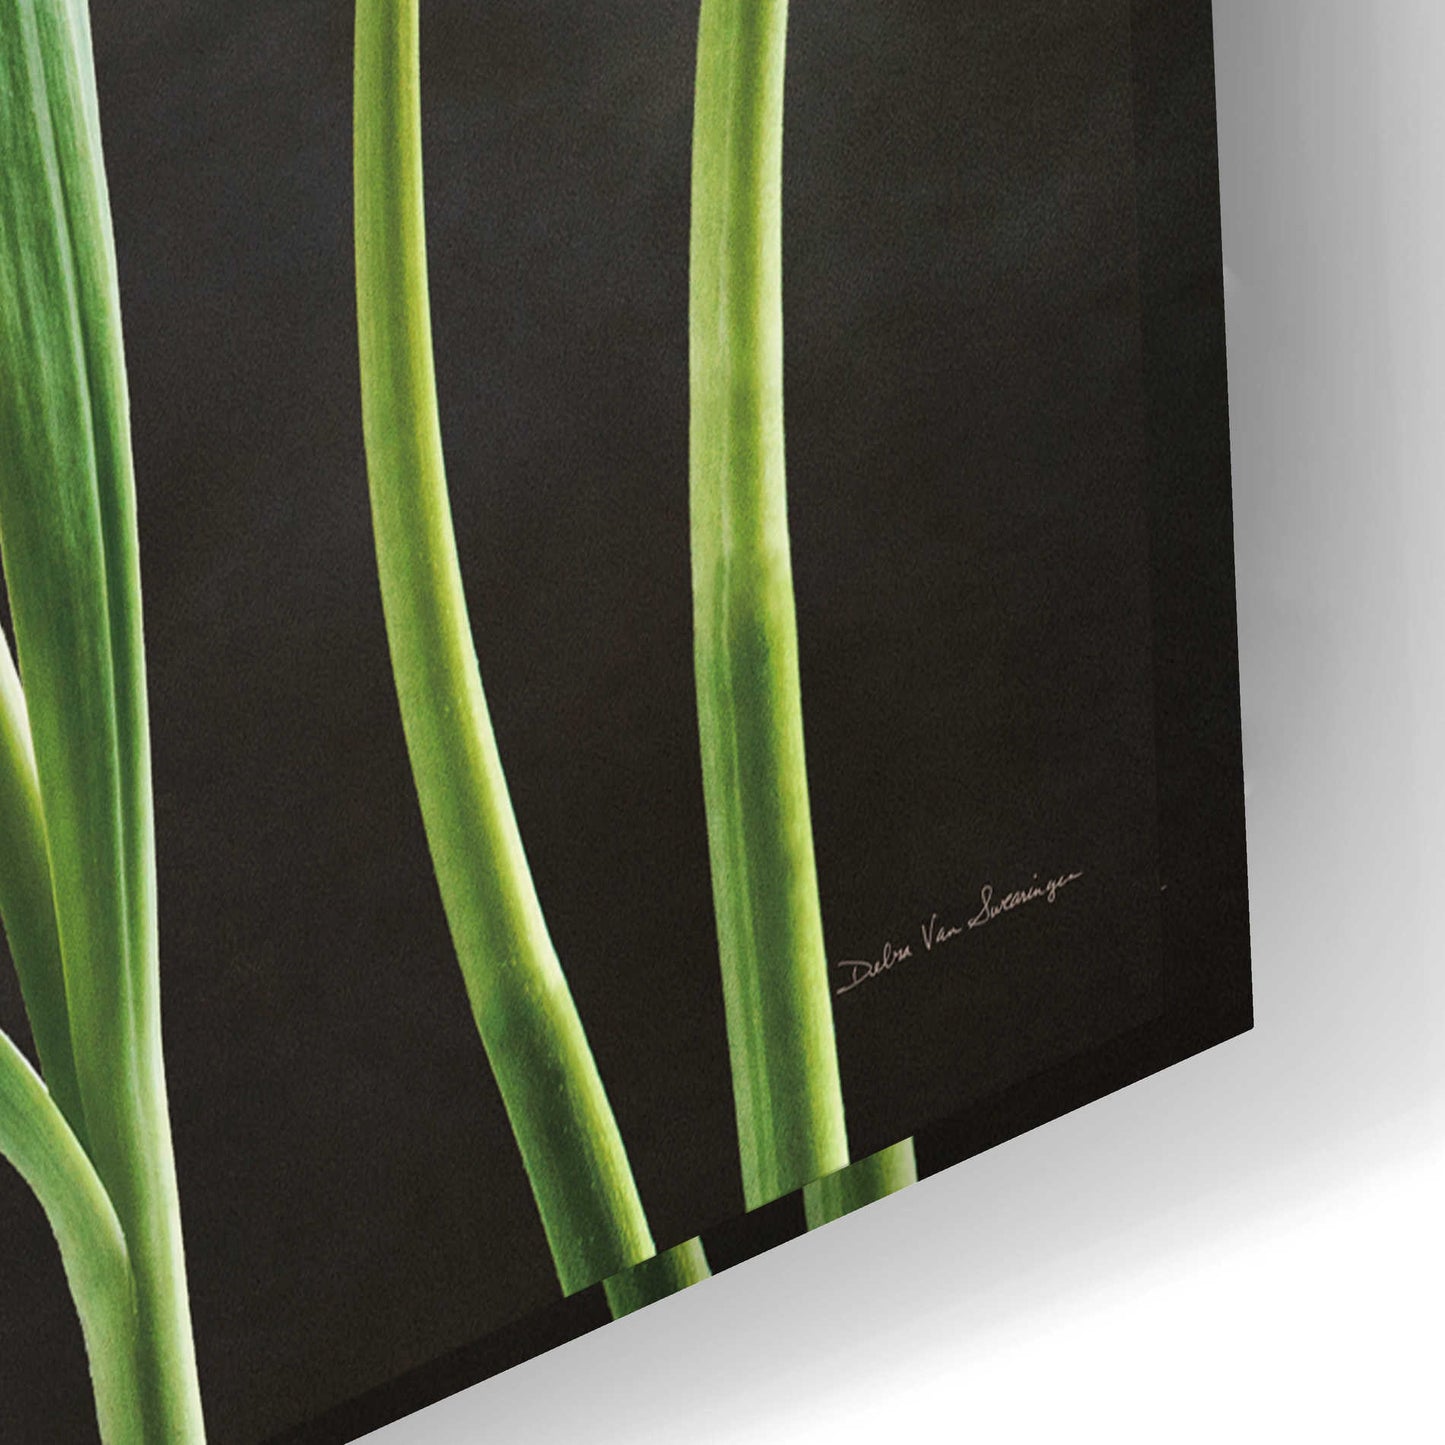 Epic Art 'Spring Tulips IX' by Debra Van Swearingen, Acrylic Glass Wall Art,24x16